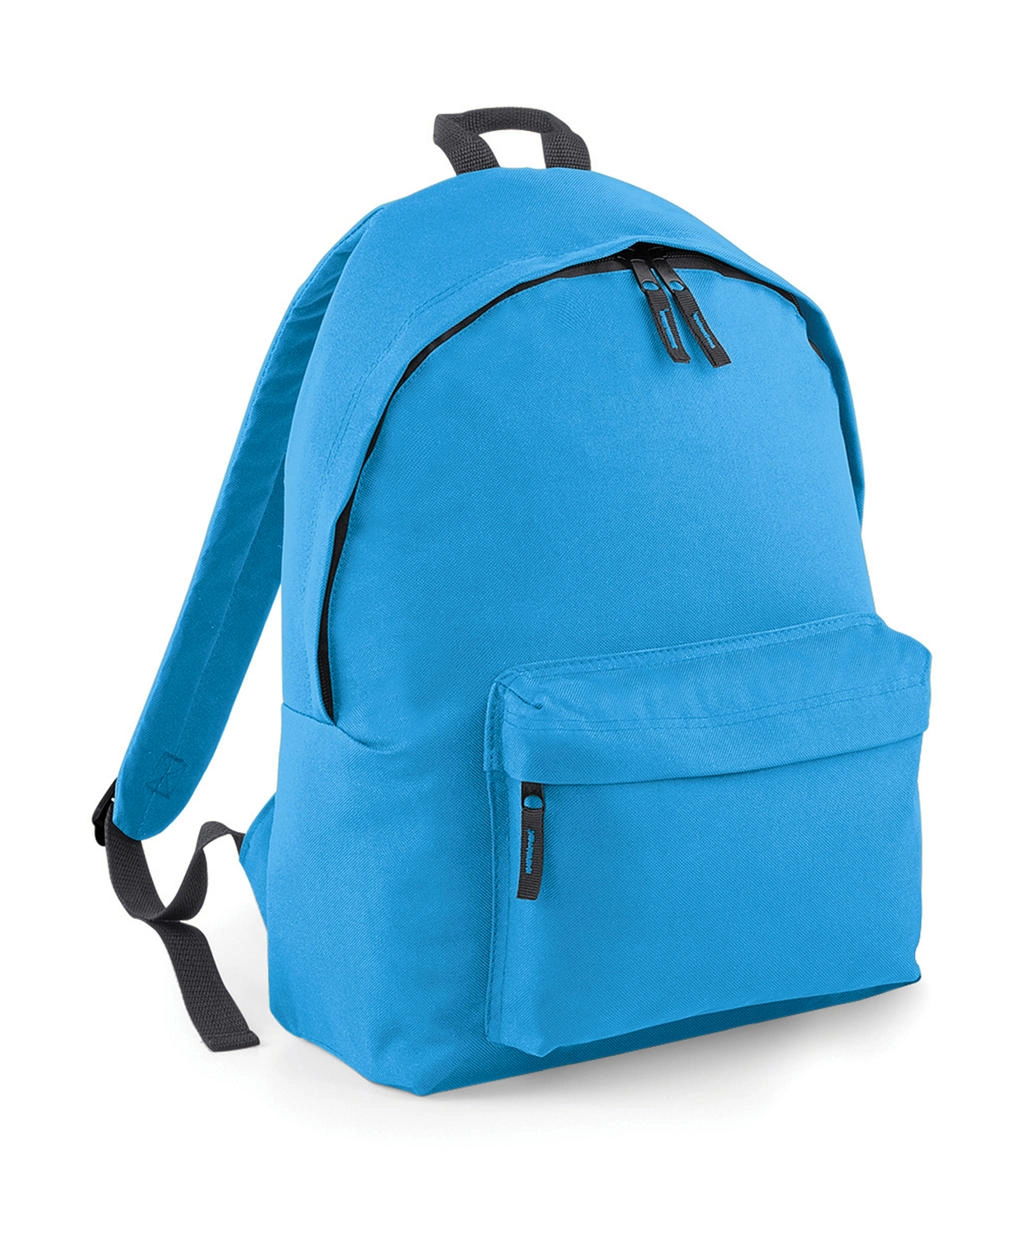 Original Fashion Backpack zum Besticken und Bedrucken in der Farbe Surf Blue/Graphite Grey mit Ihren Logo, Schriftzug oder Motiv.